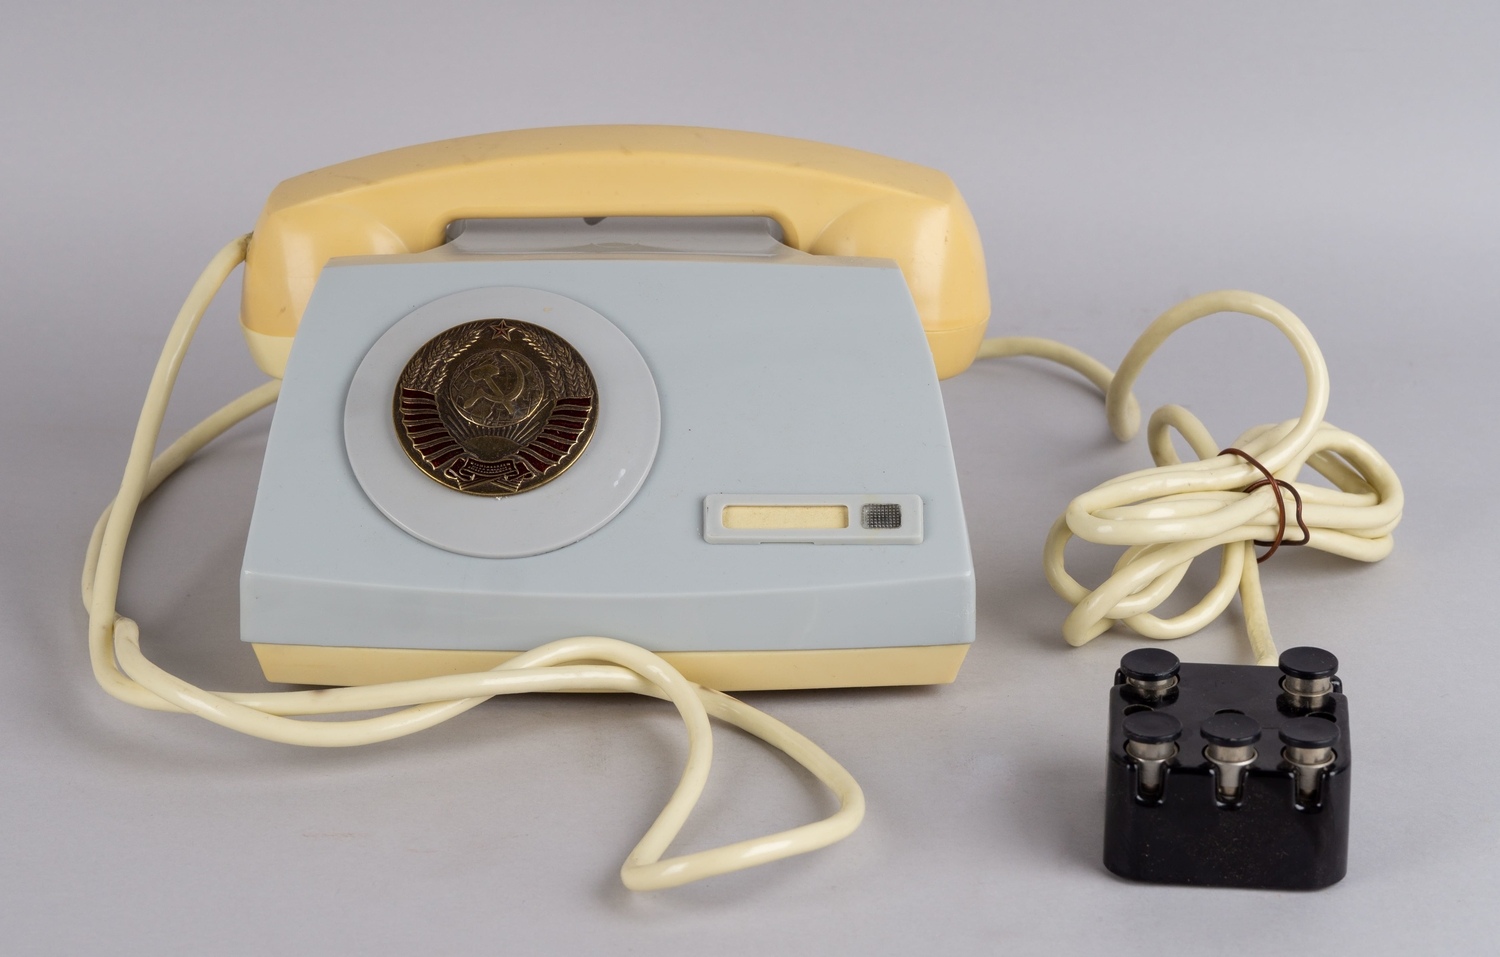 Аппарат телефонный П-170 с паспортом и руководством по ремонту в коробке.<br>СССР, 1970-е гг.